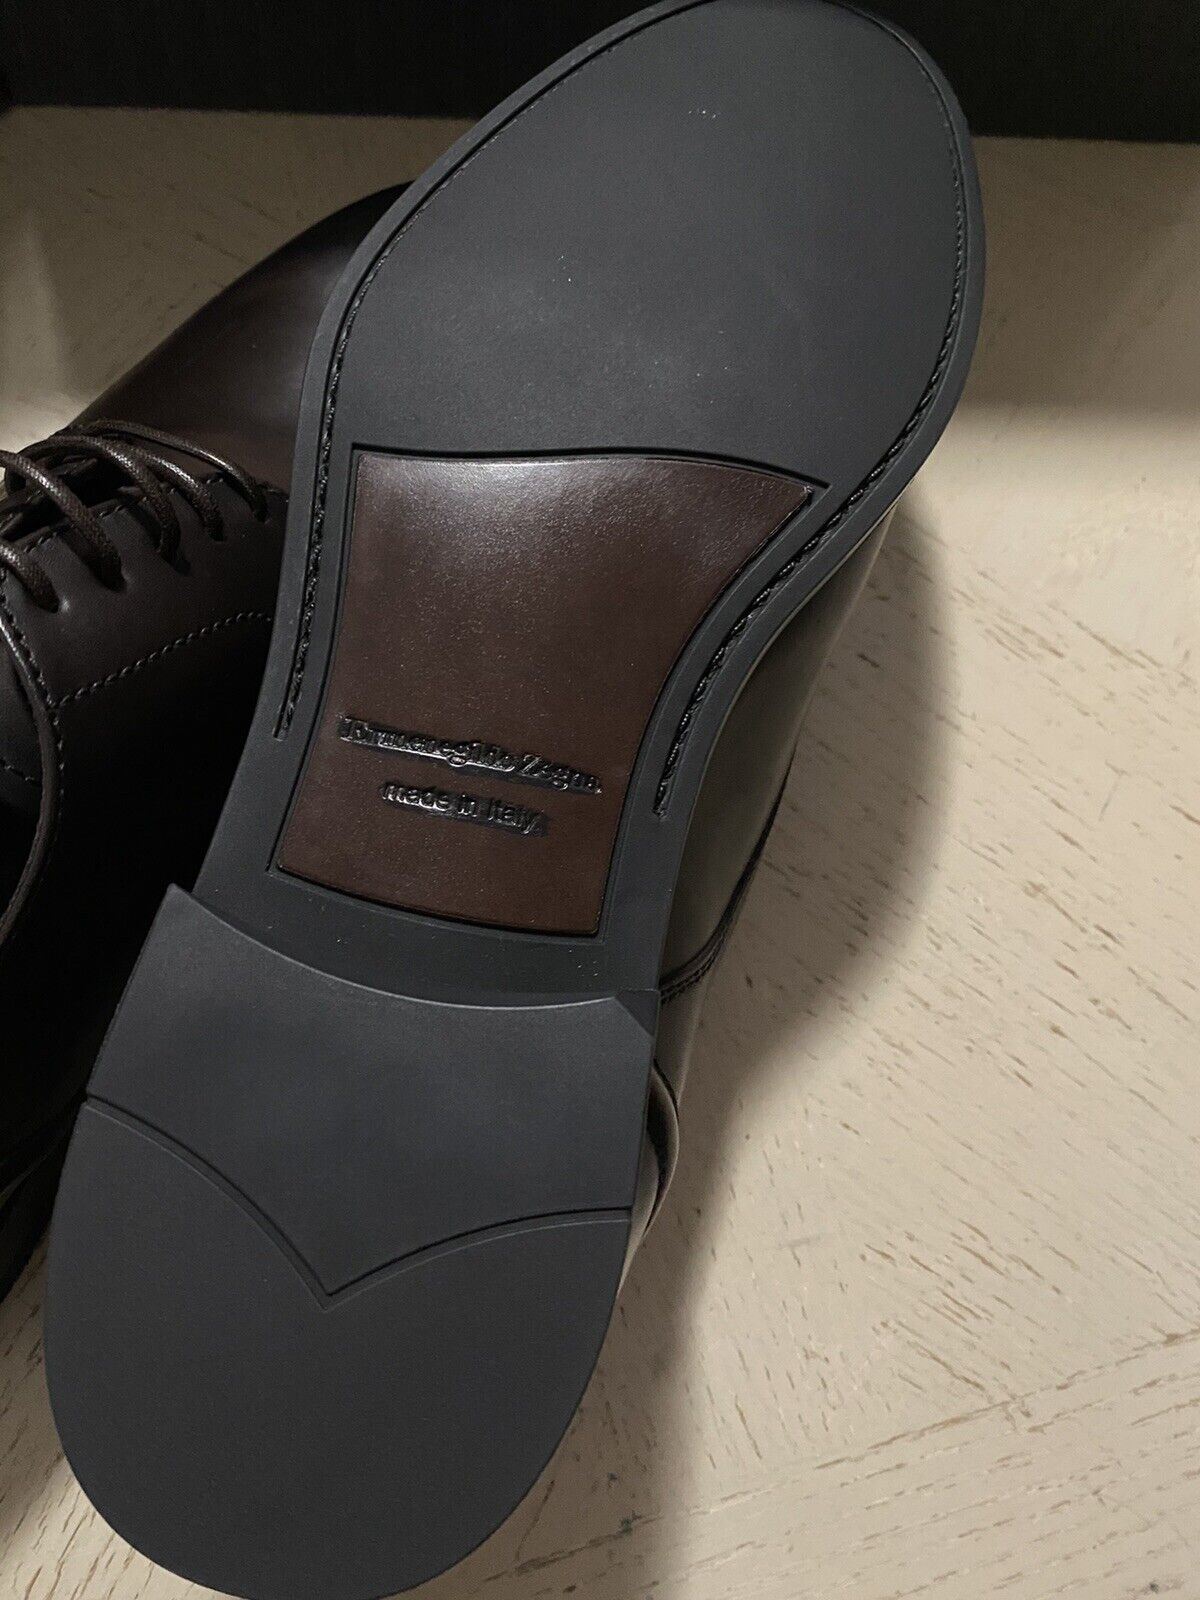 Новые модельные туфли Ermenegildo Zegna, MD Brown 11, США (44 ЕС), Италия, 675 долларов США.